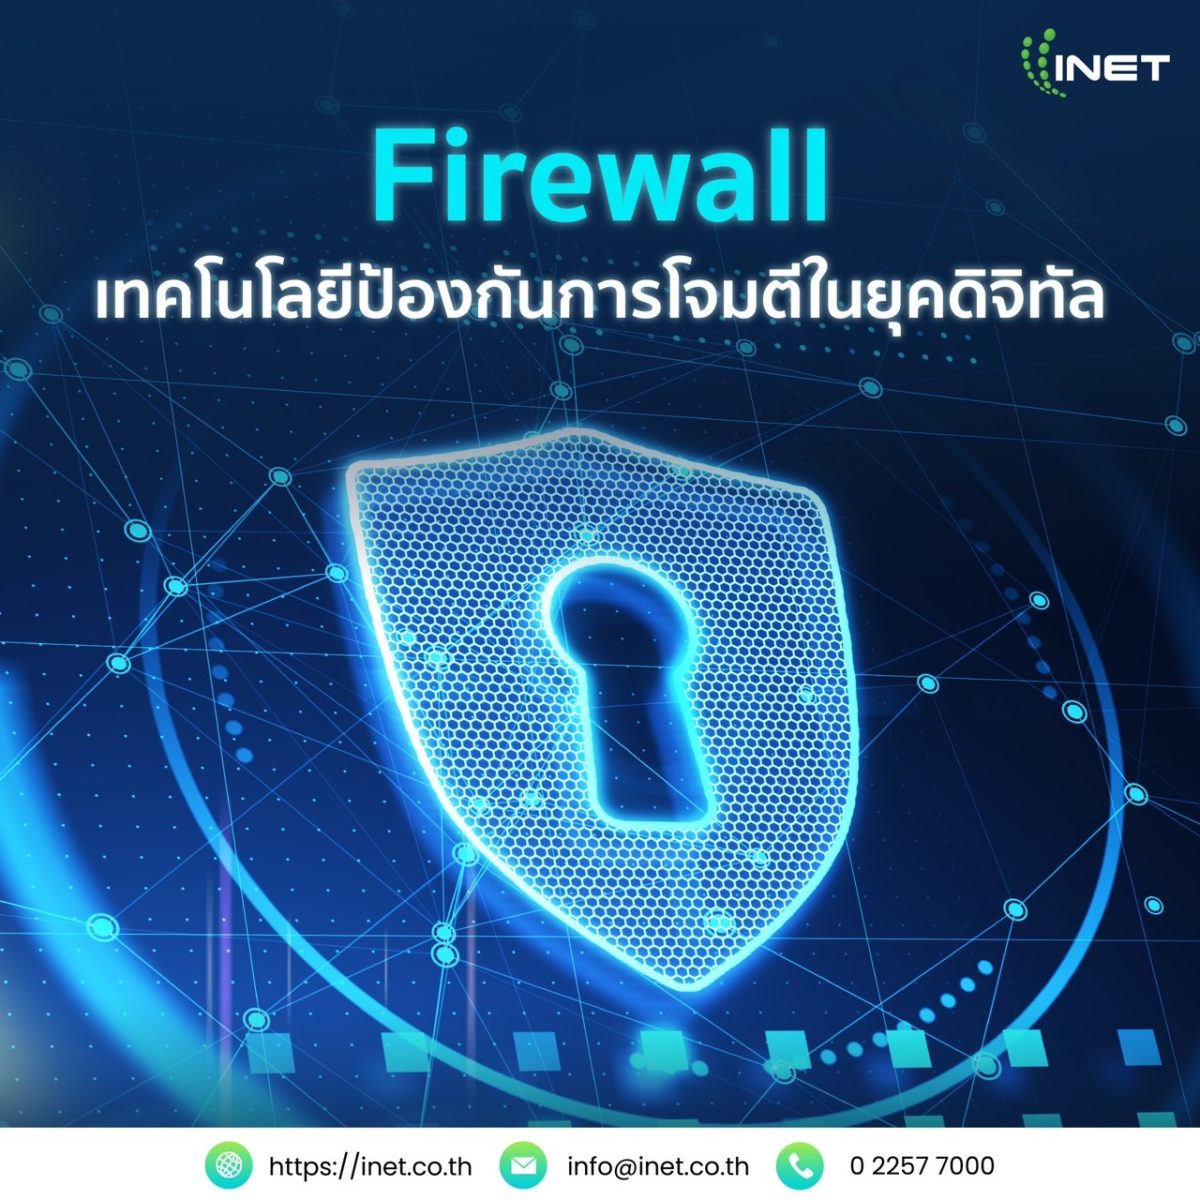 Firewall เทคโนโลยีป้องกันการโจมตีในยุคดิจิทัล